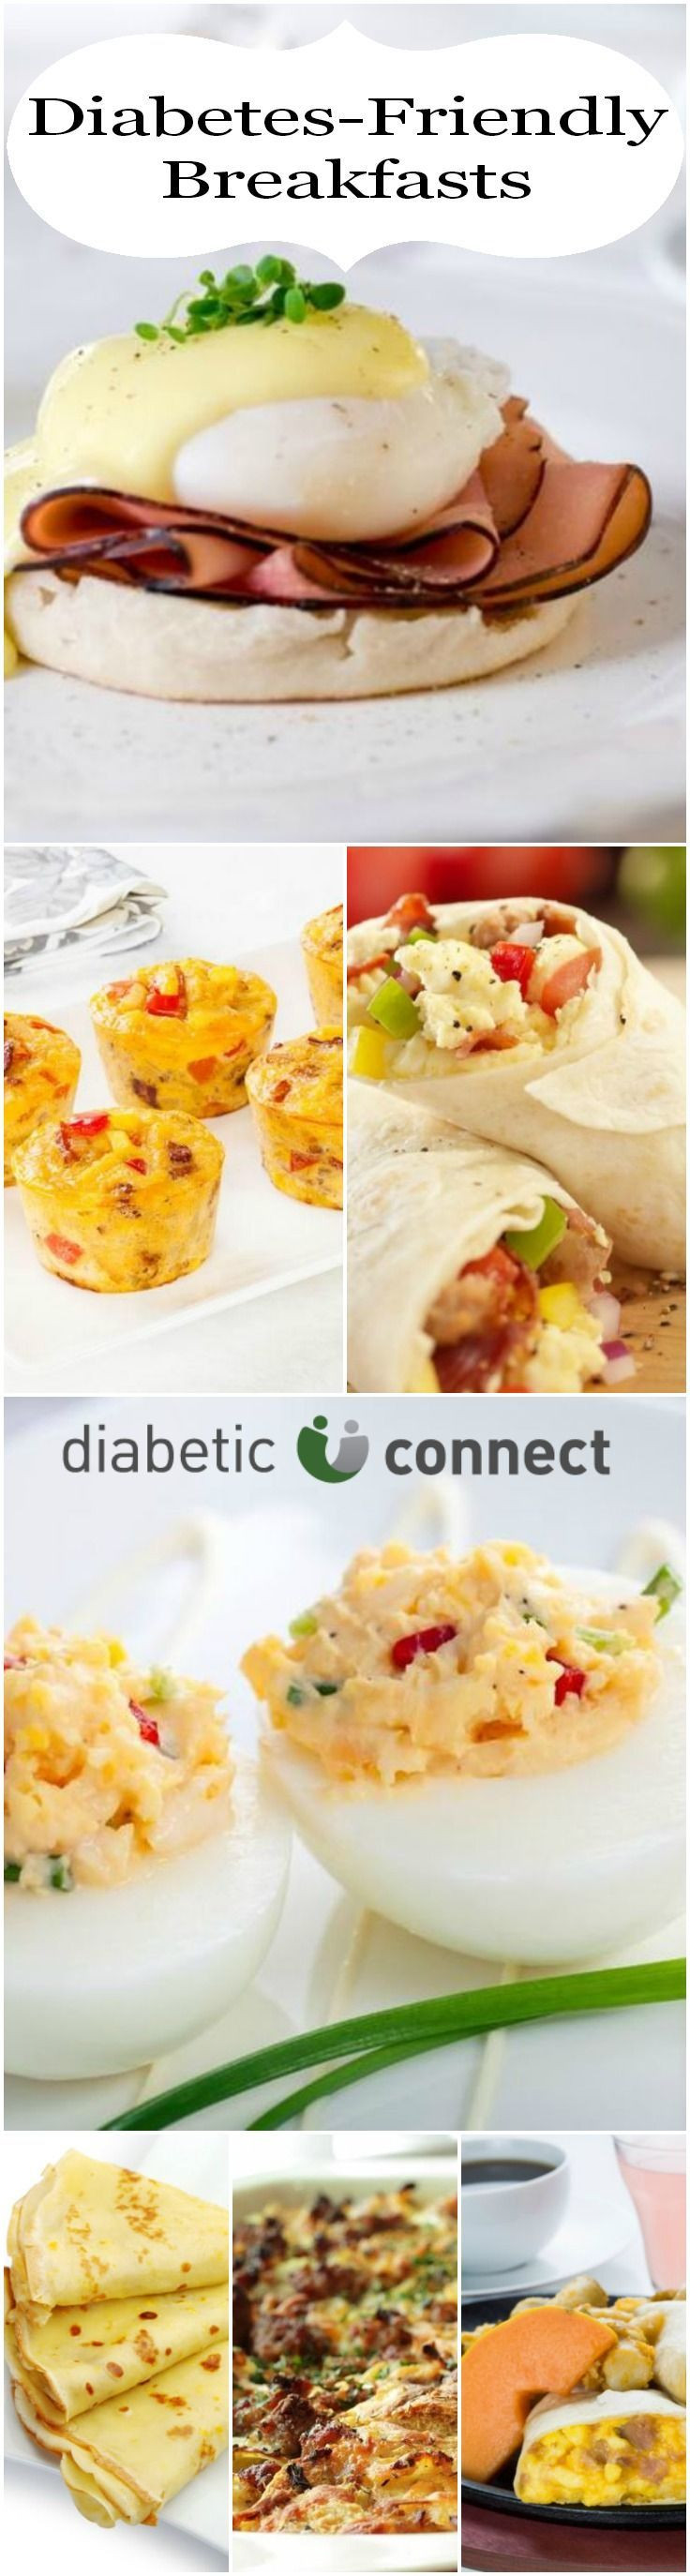 Diabetic Recipes For Lunch
 Diabetic breakfast ideas